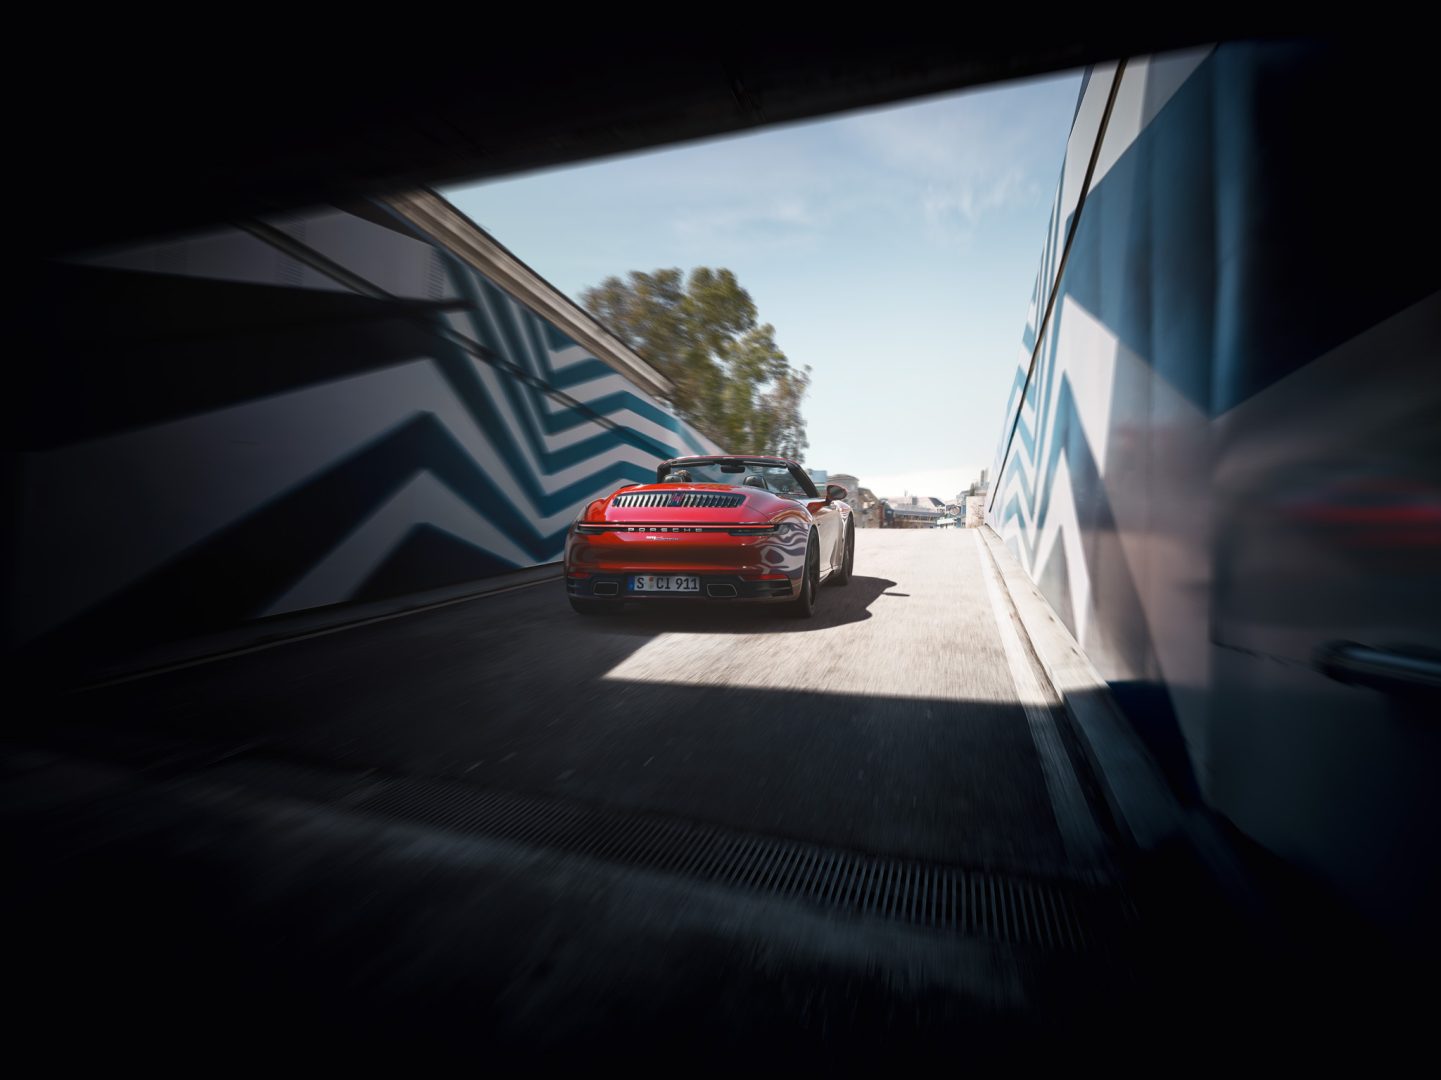 Punainen Porsche 911 ajamassa ulos tunnelista.